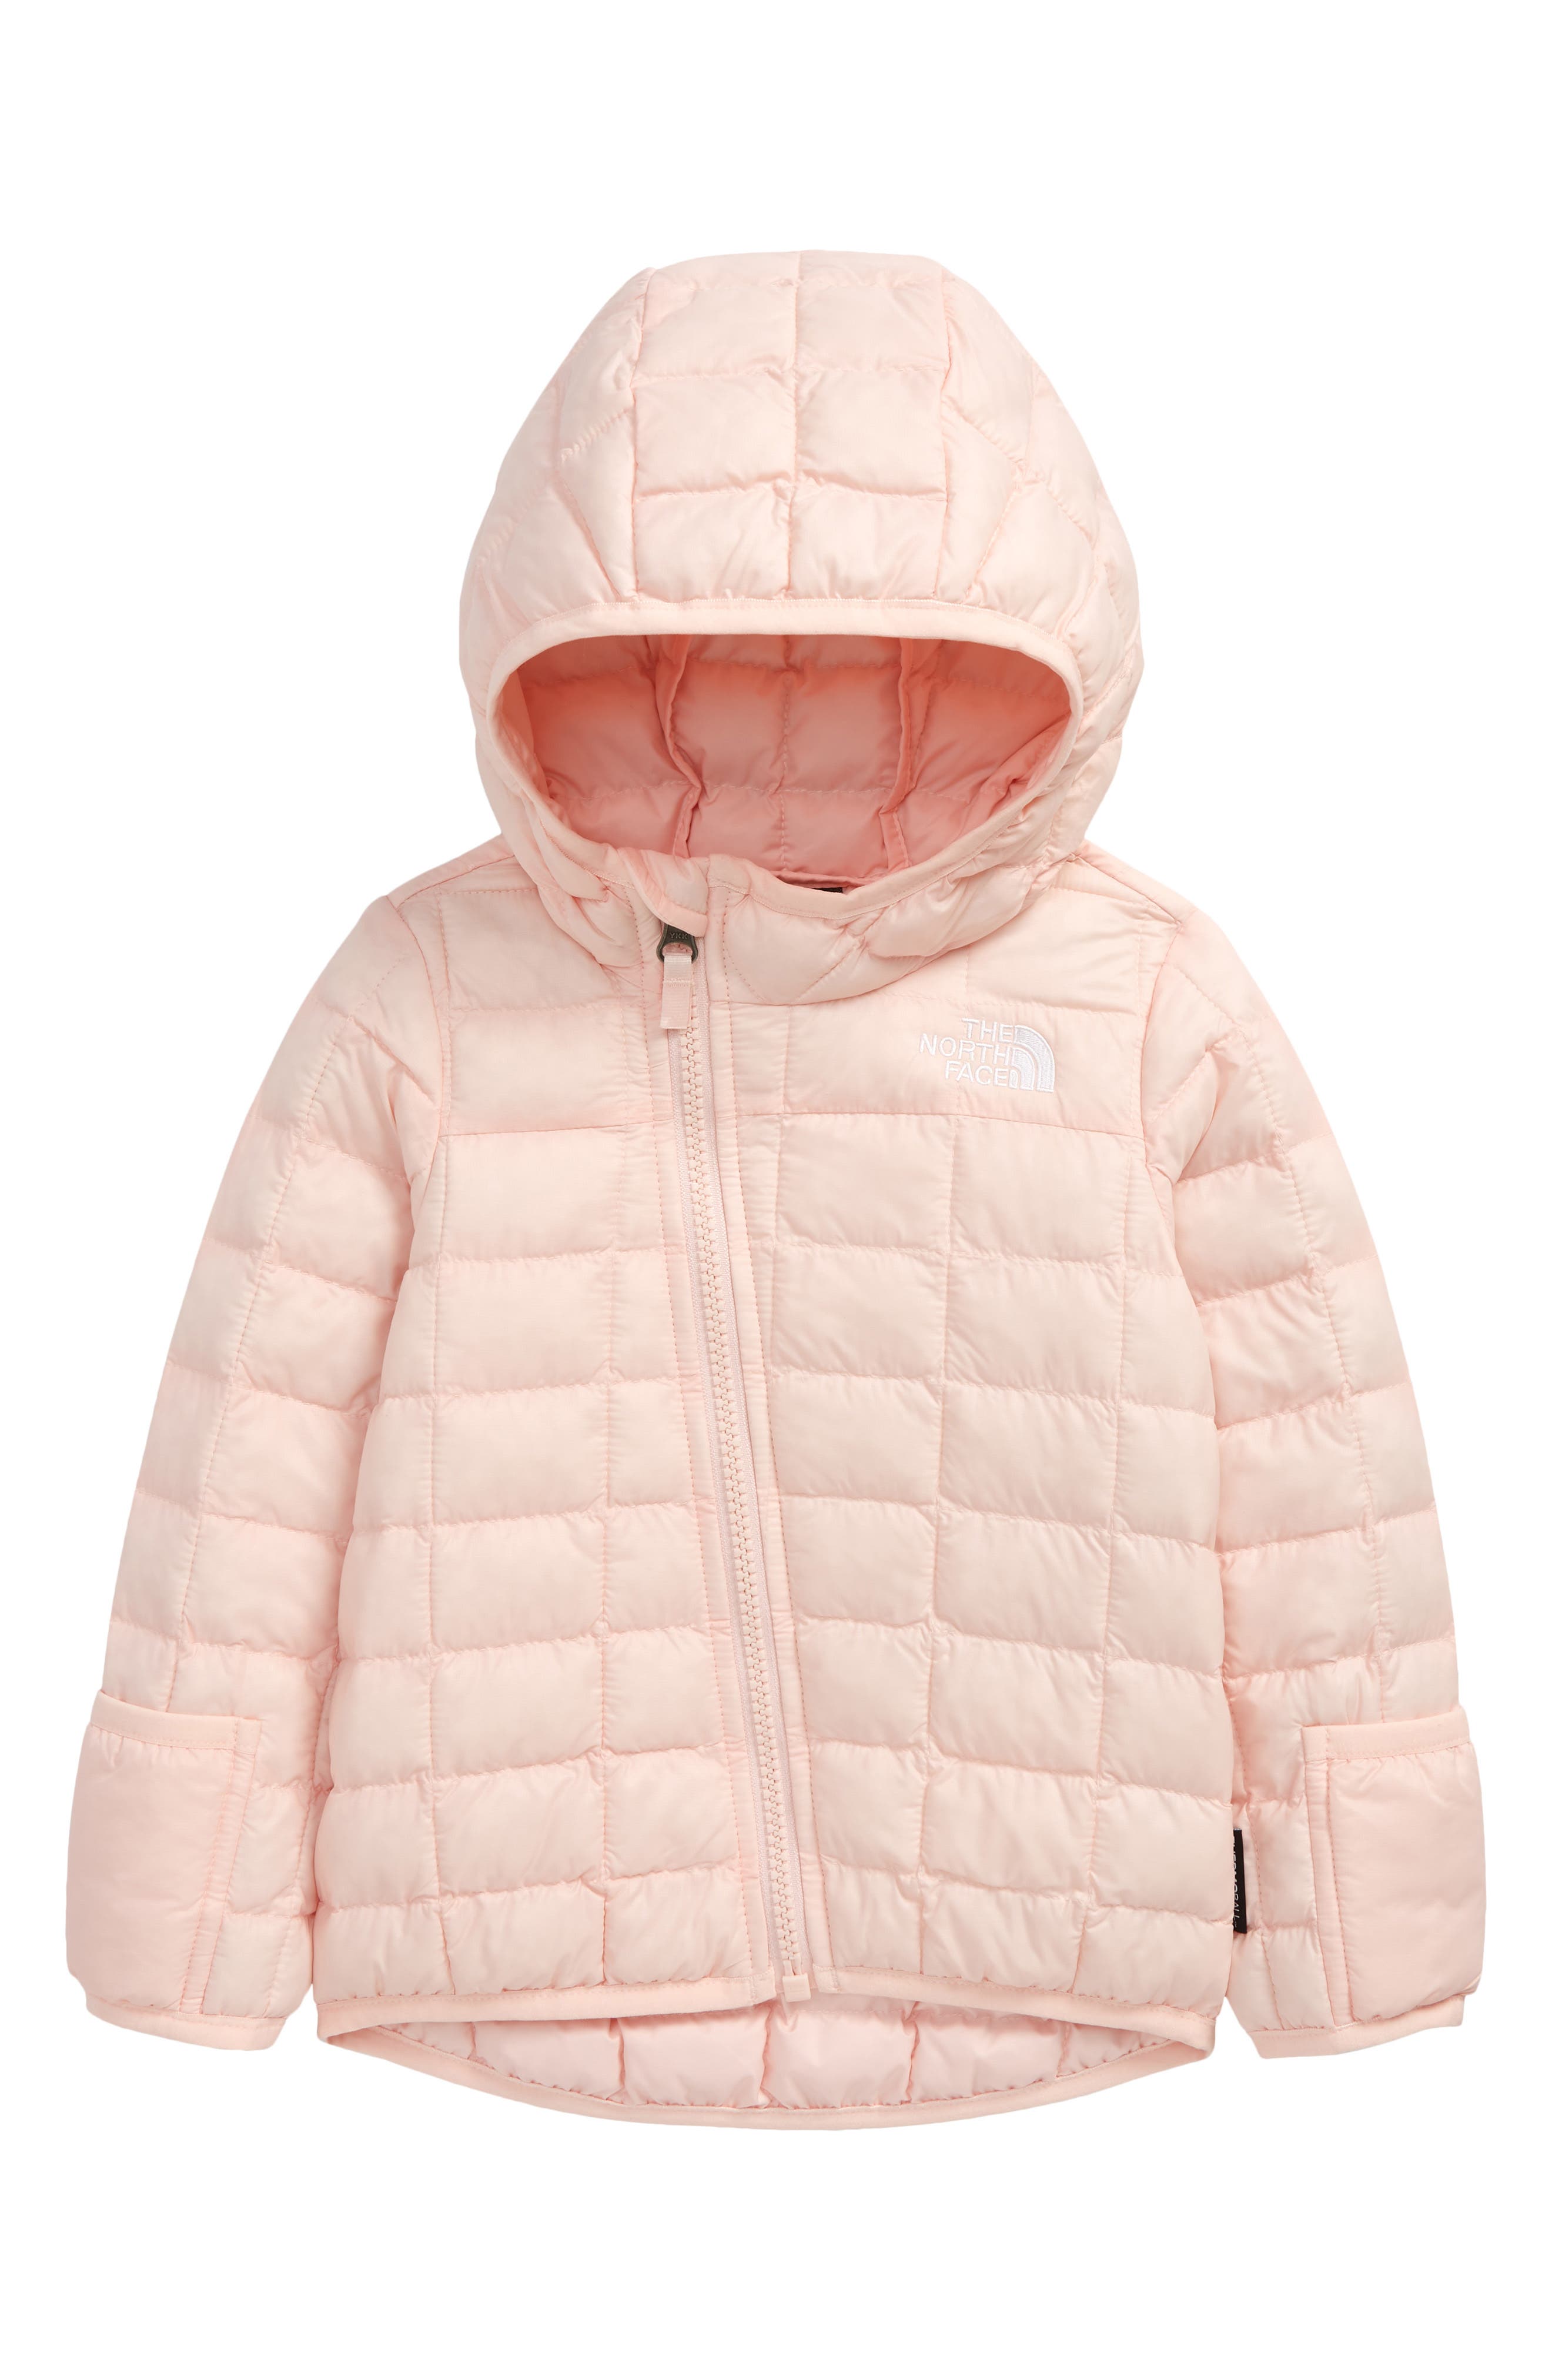 Children Girls Kids Coats Hooded Jackets Long Sleeve Hoodies Parka Outwear Tops